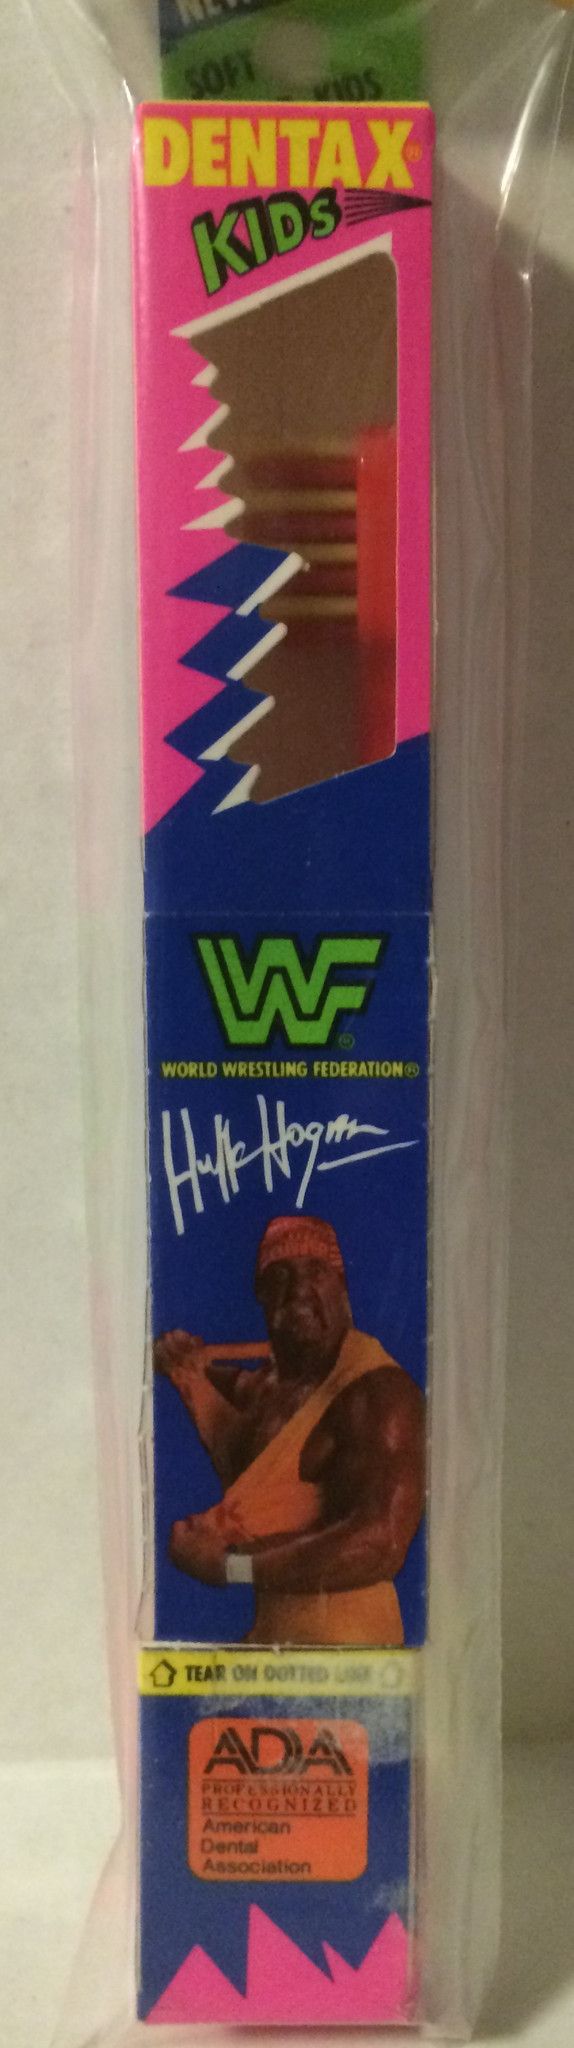 Hulk Hogan toothbrush in package